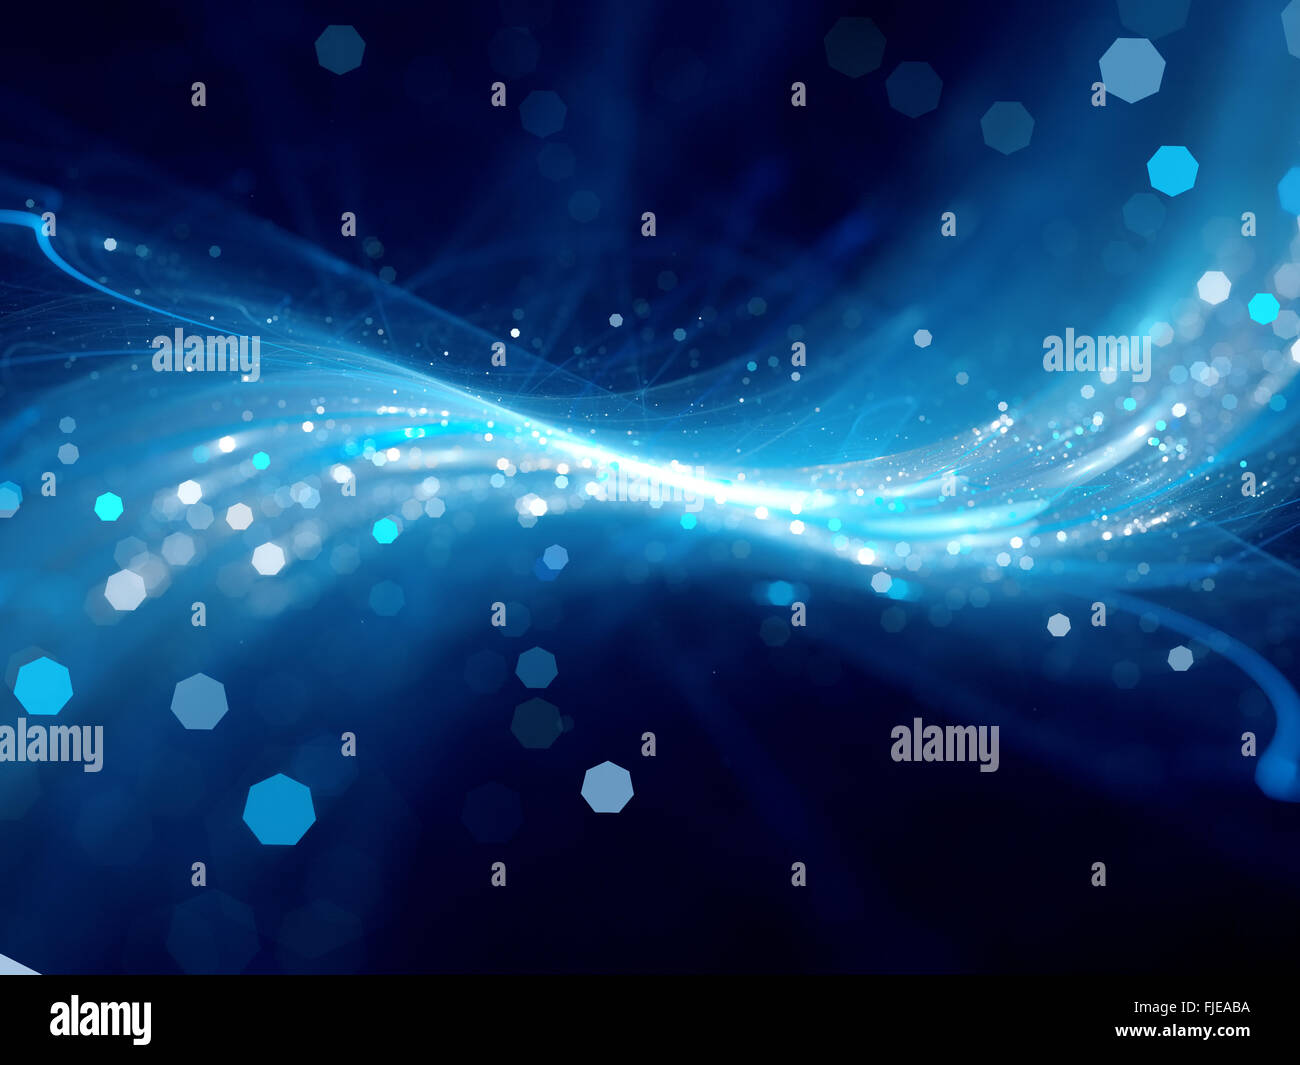 La technologie de flux lumineux bleu, générée par ordinateur abstract background Banque D'Images